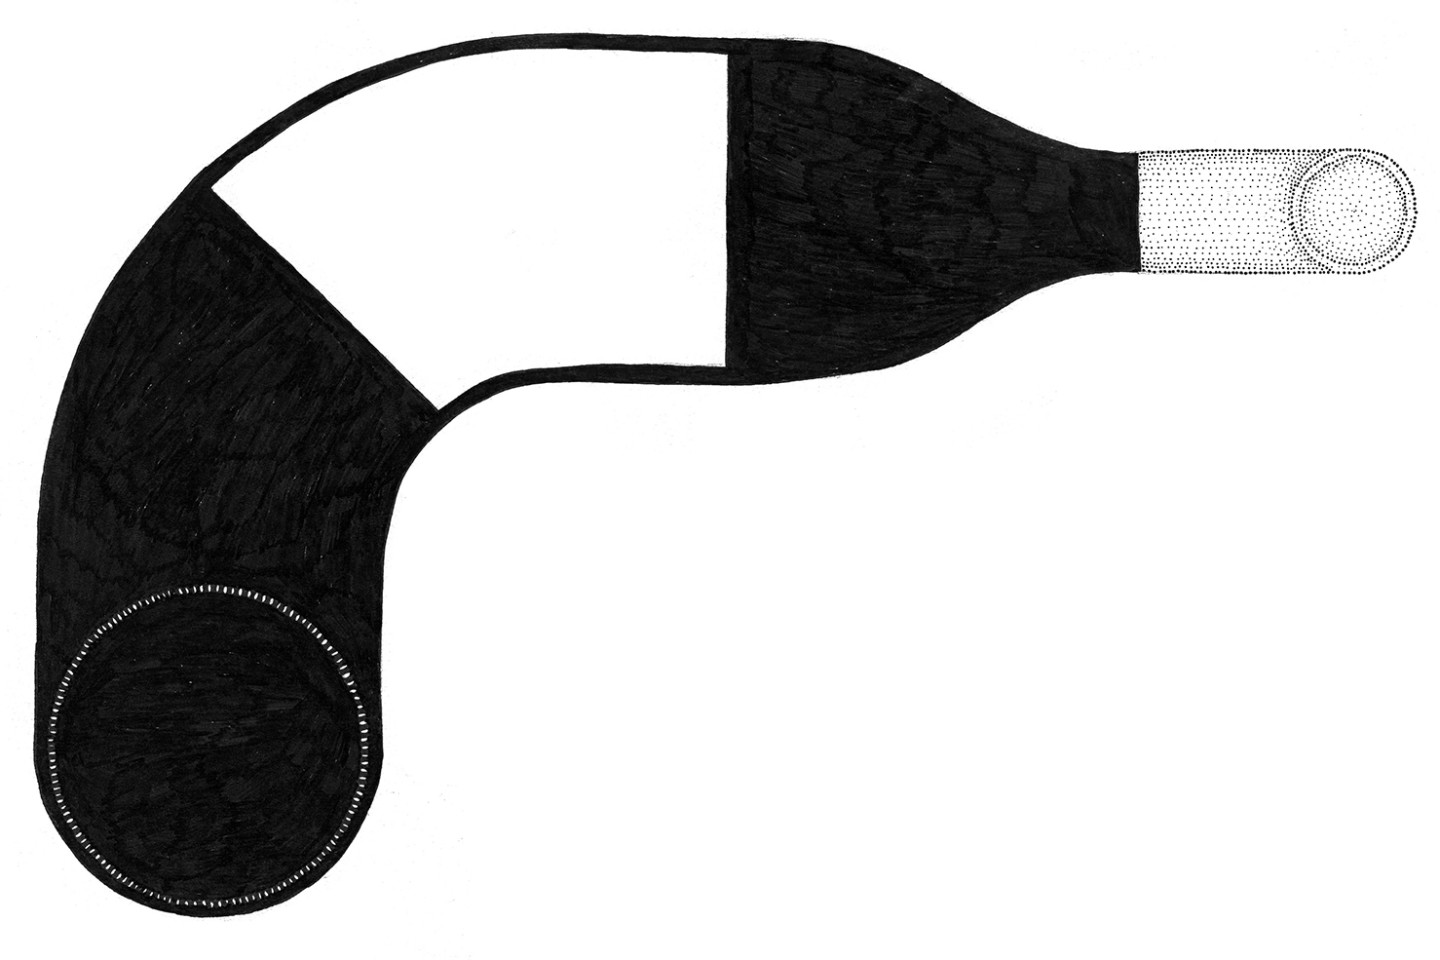 Teckning av vinflaska i svart/vitt.